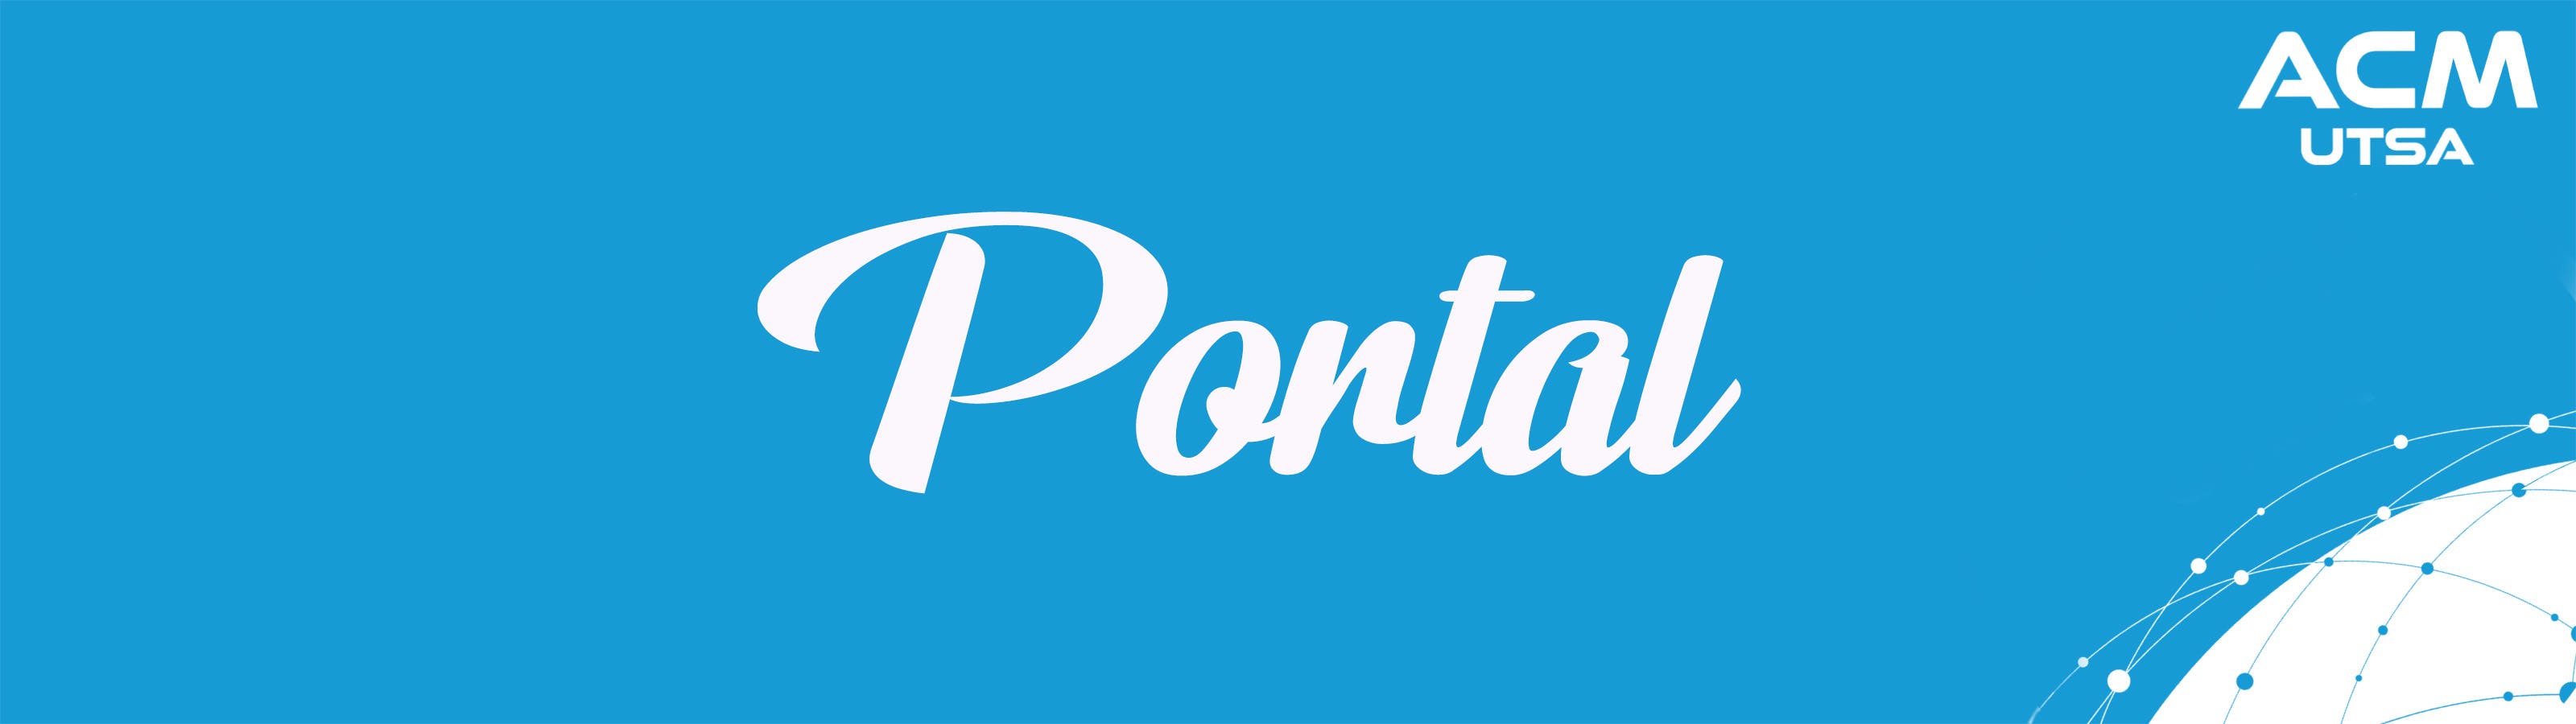 Banner for Portal